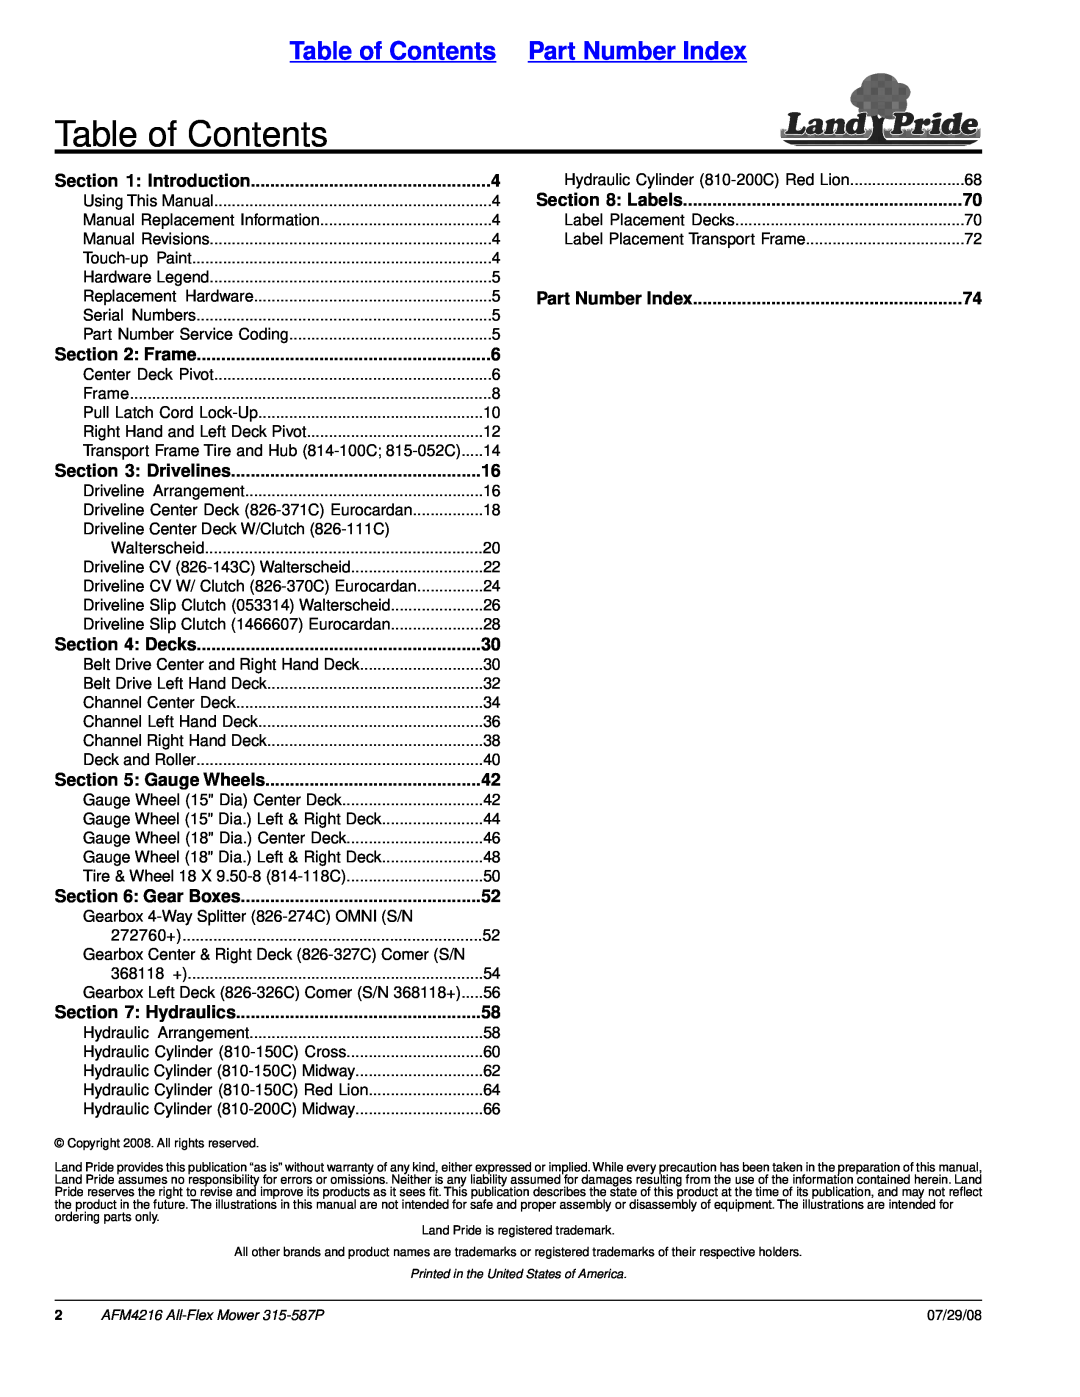 Land Pride AFM4216 manual Table of Contents Part Number Index, Introduction, Frame, Drivelines, Decks, Gauge Wheels 